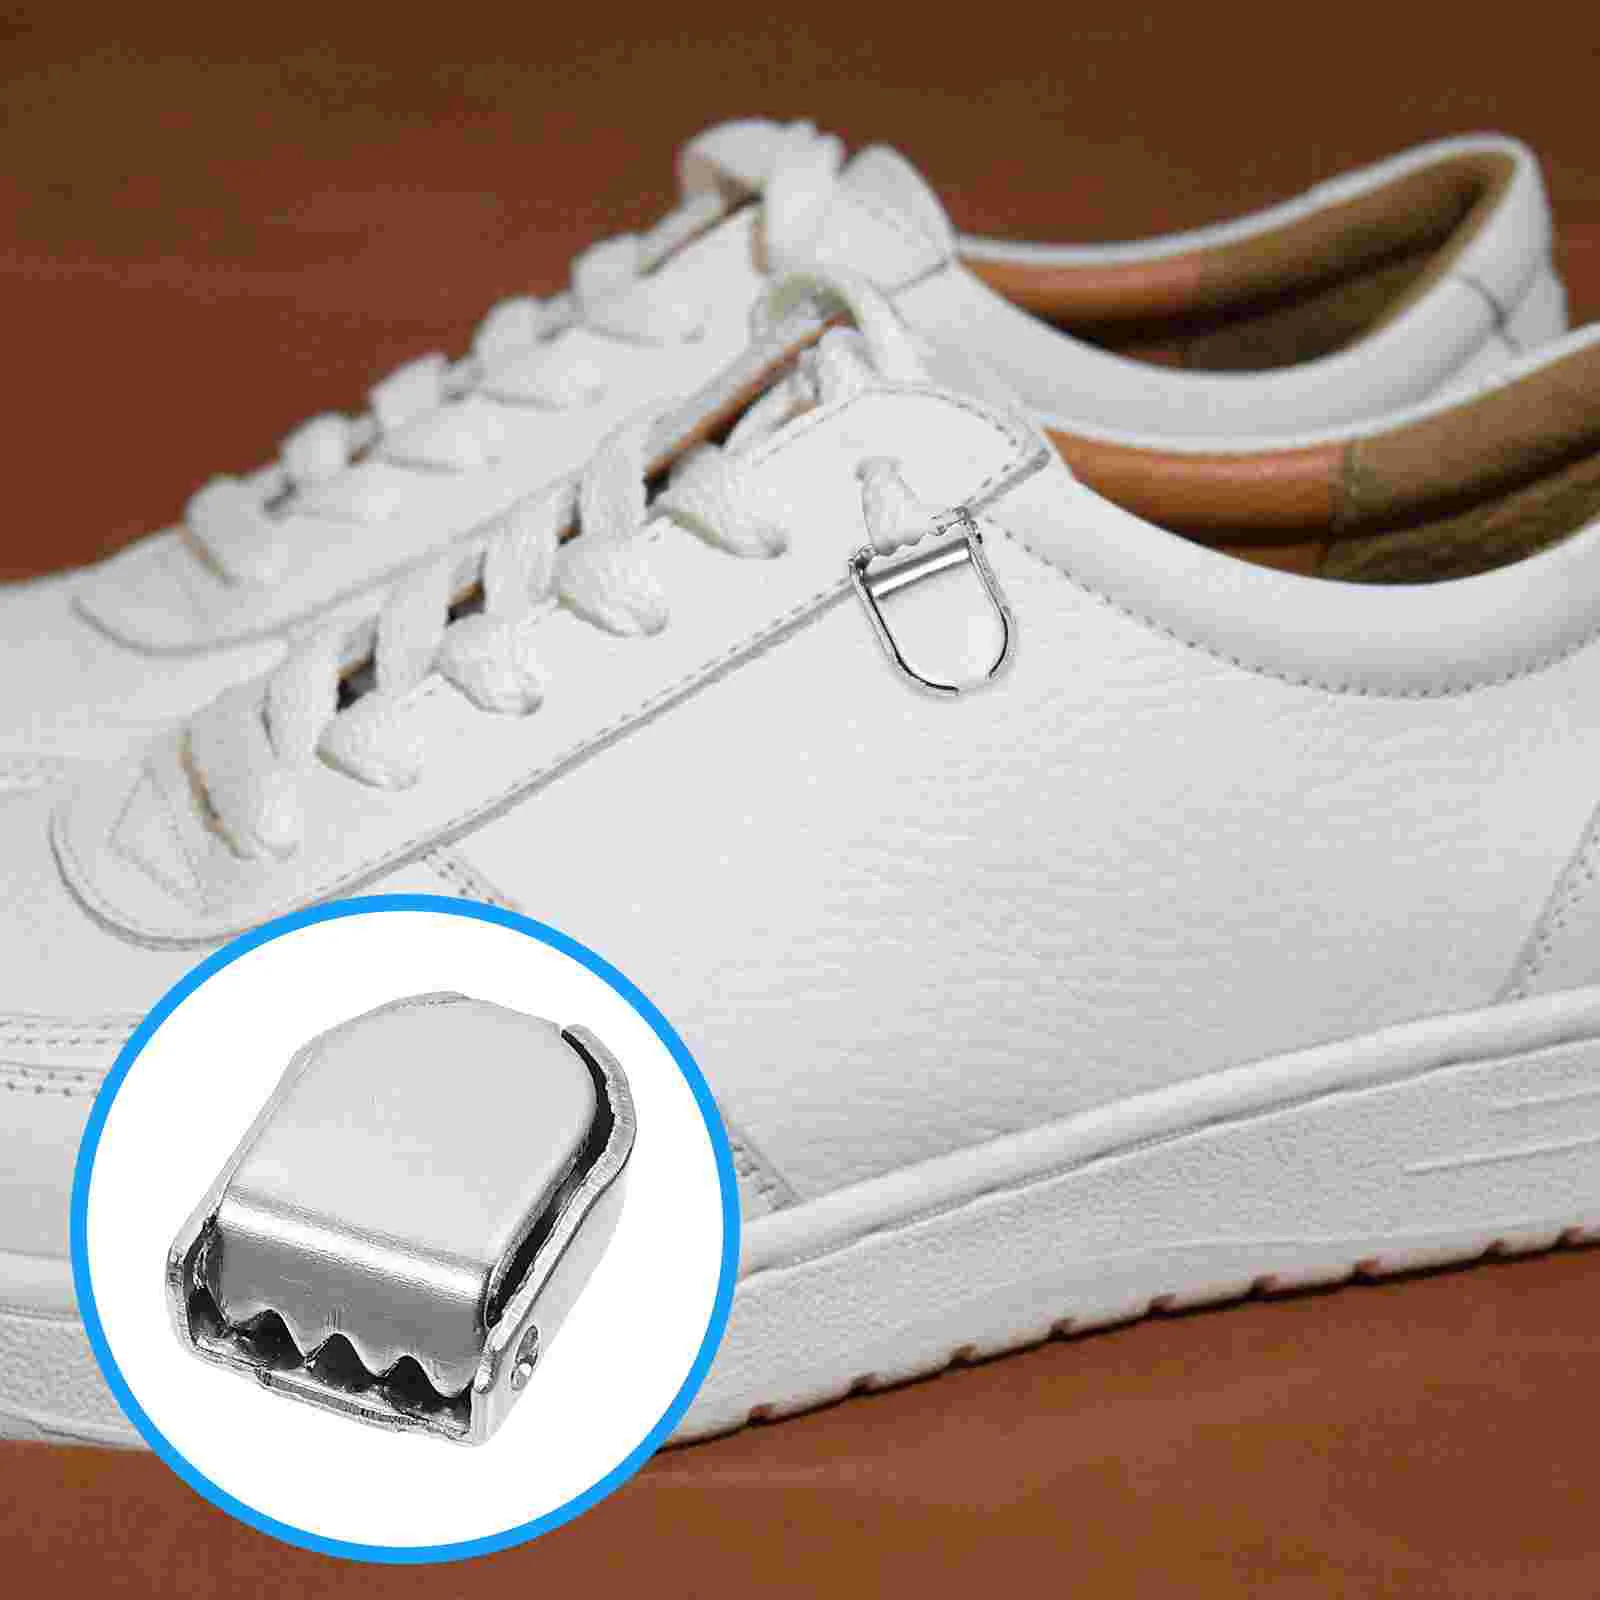 Lacci delle scarpe con chiusura in pizzo in metallo suggerimenti per la testa fibbia per lacci delle scarpe pigri chiusure per lacci delle scarpe da ginnastica chiusure per la coda clip per connettori